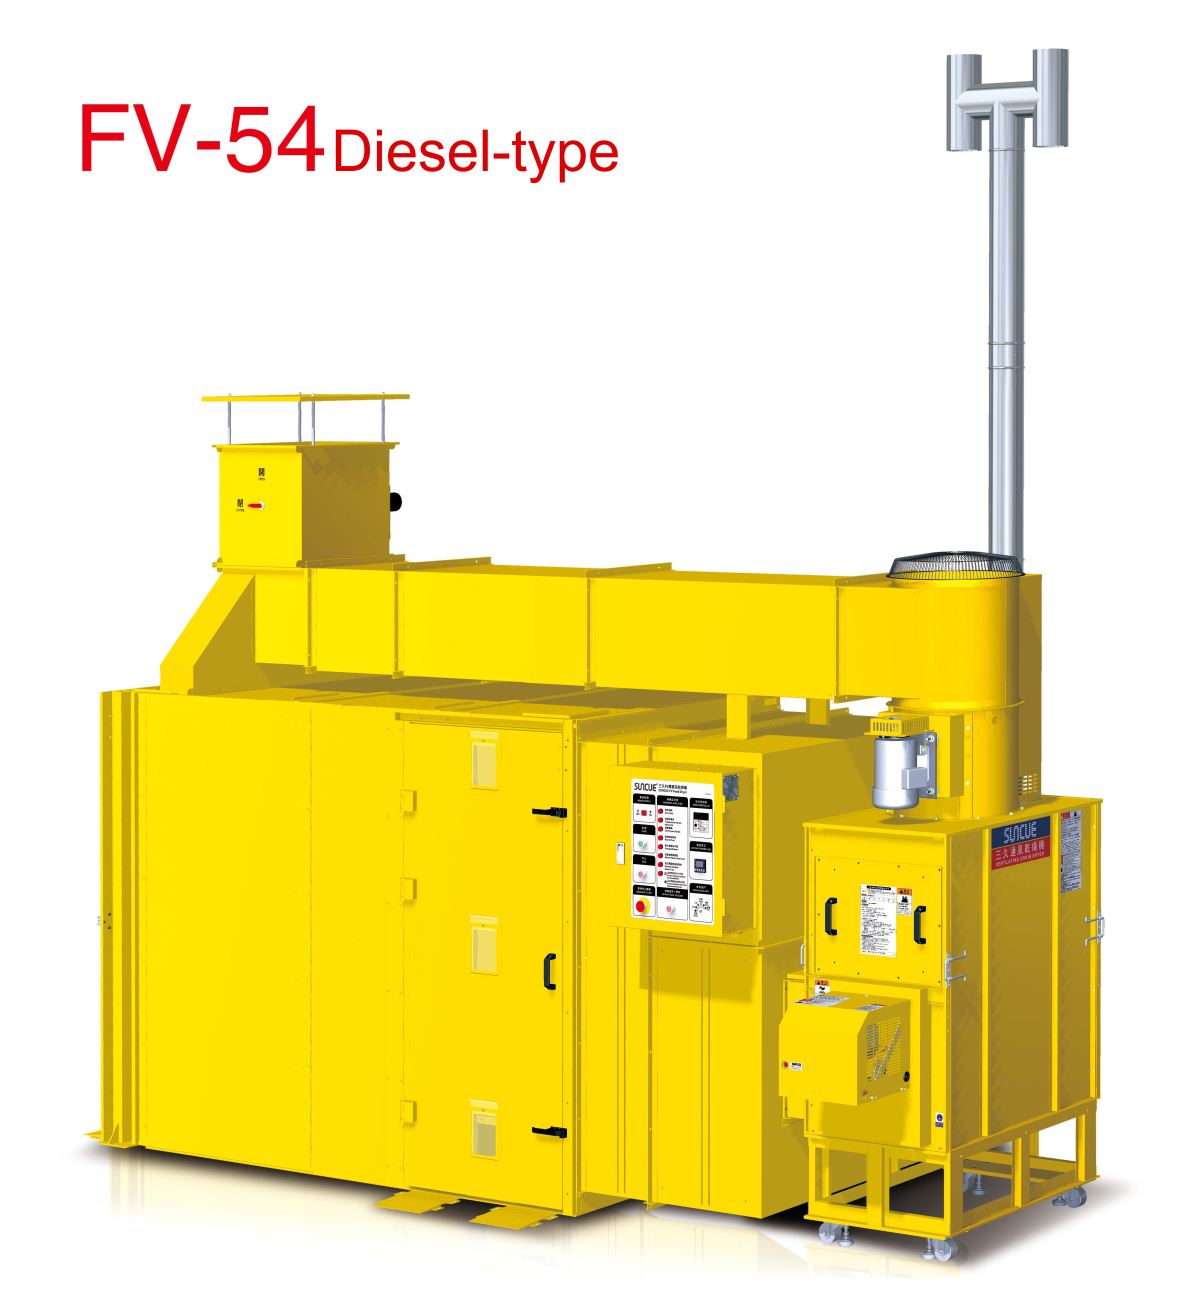 FV-54 diesel-type